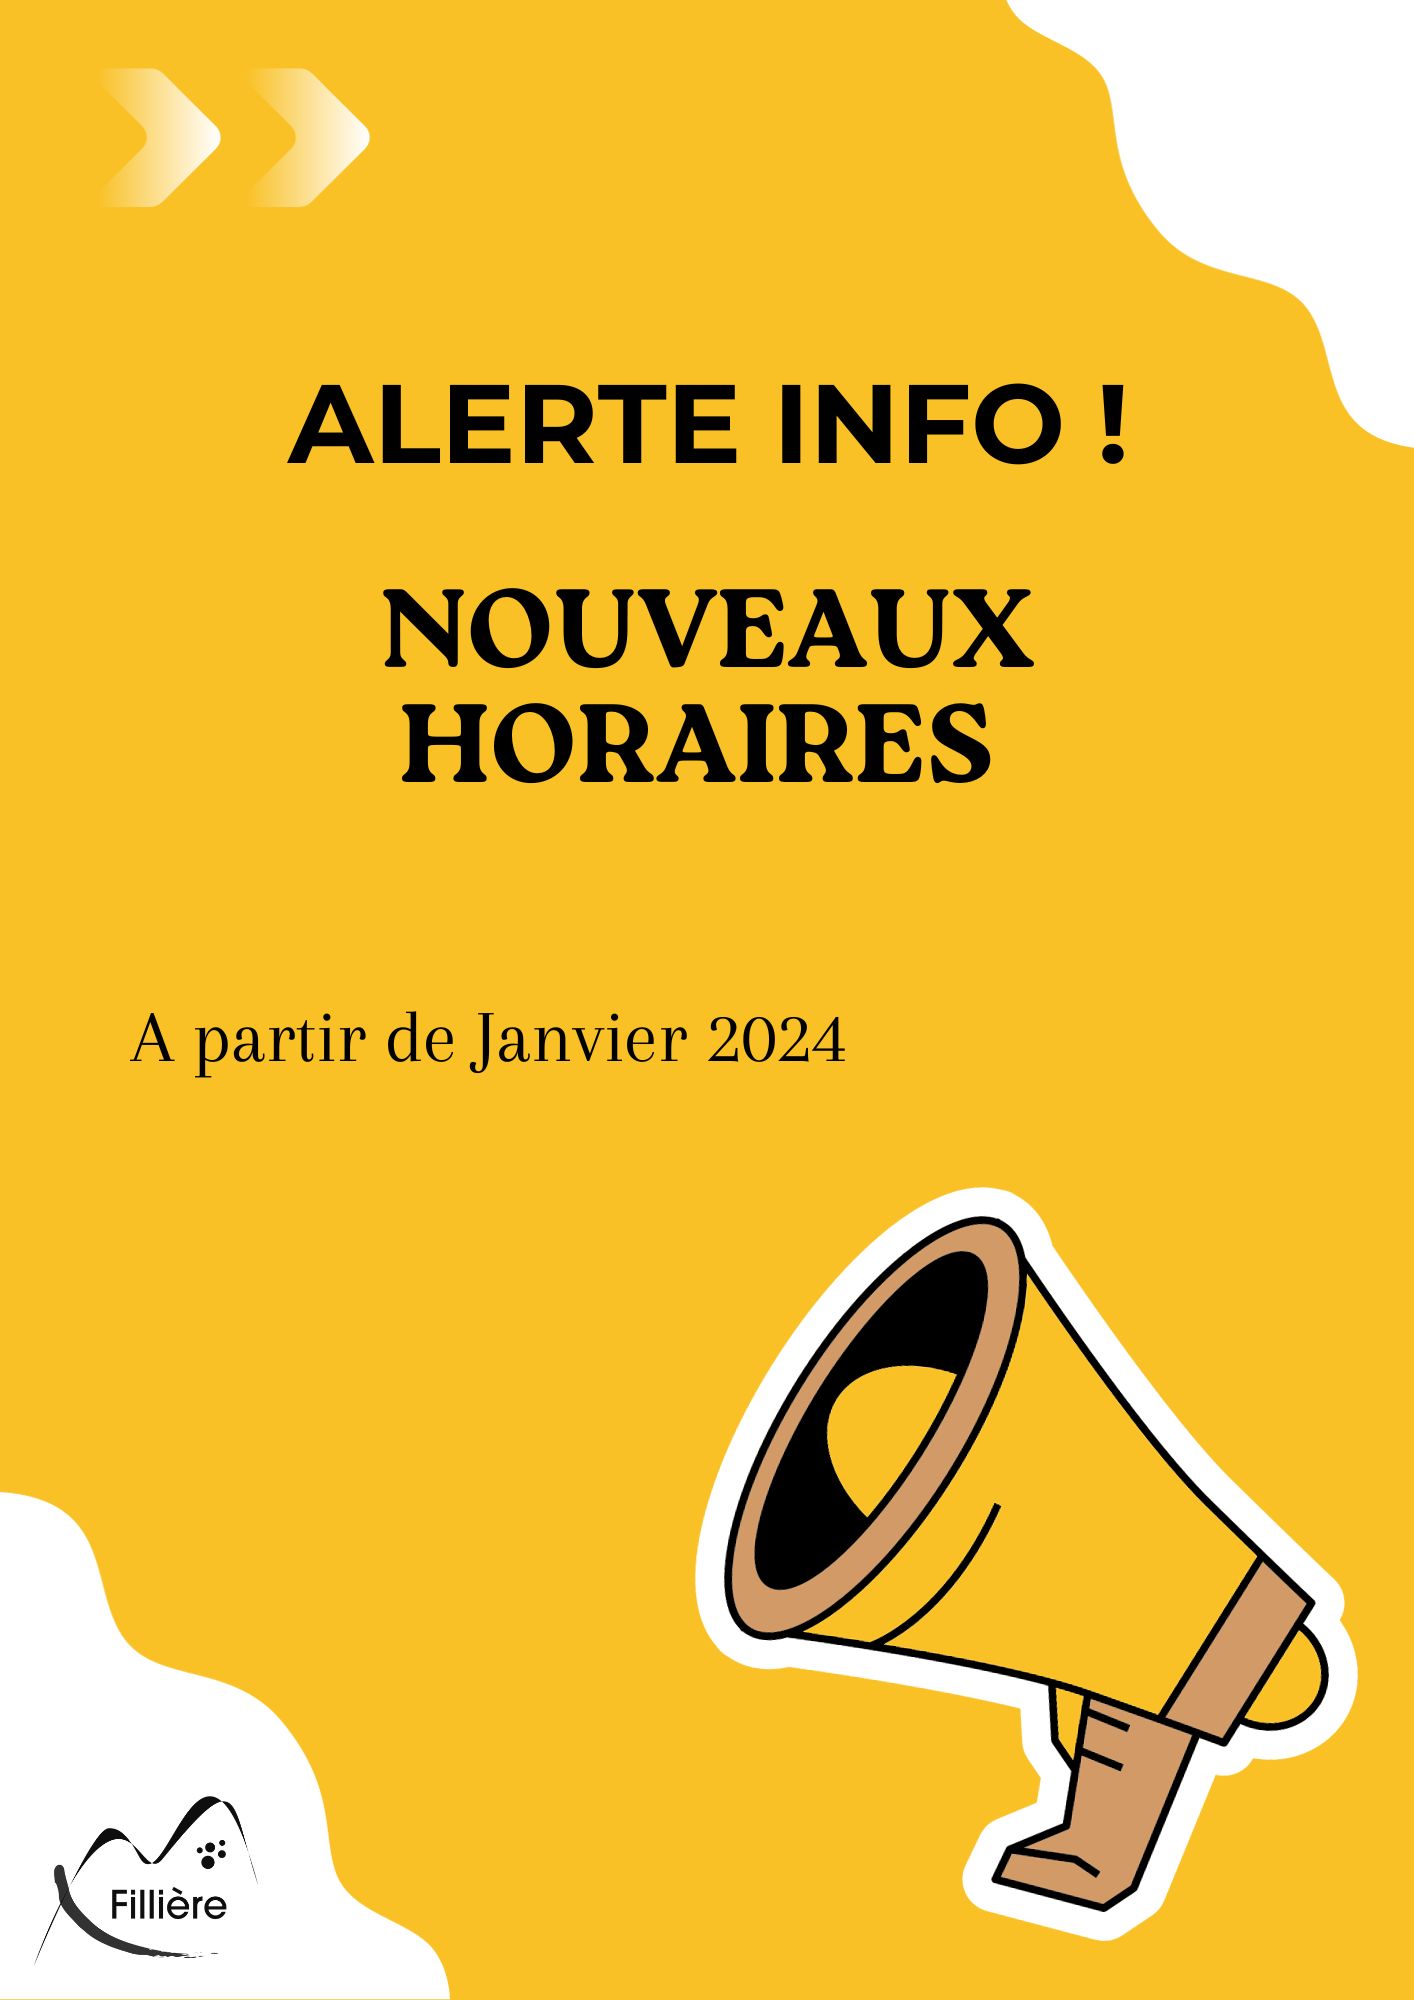 Place des Terreaux (janv. 2024) Horaires, Infos & avis